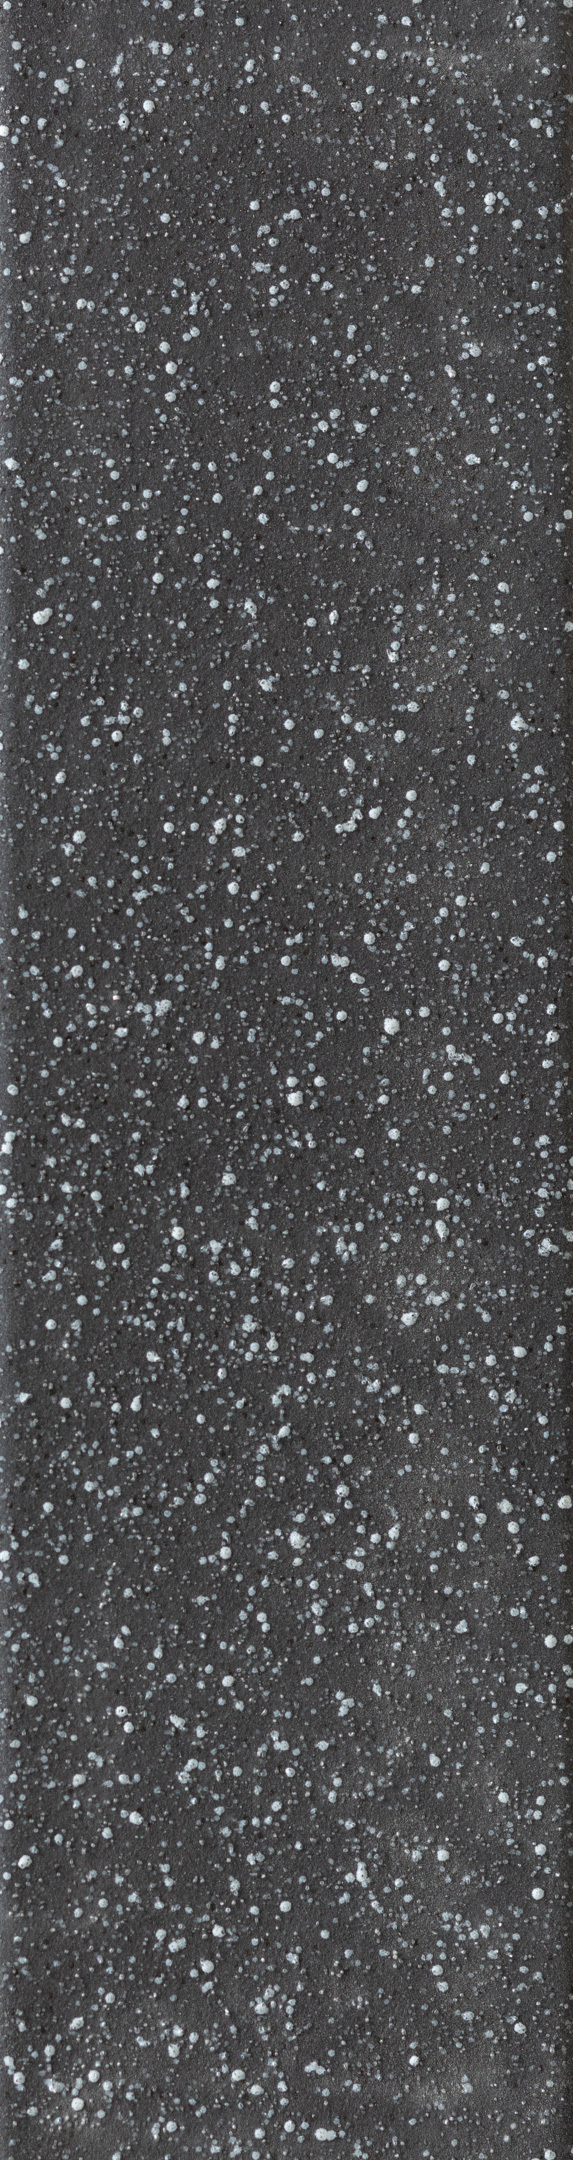 Клинкерная плитка Керамин Мичиган 2 черная 245х65х7 мм (34 шт.=0,54 кв.м) клинкерная плитка керамин мичиган 7 белая 245х65х7 мм 34 шт 0 54 кв м